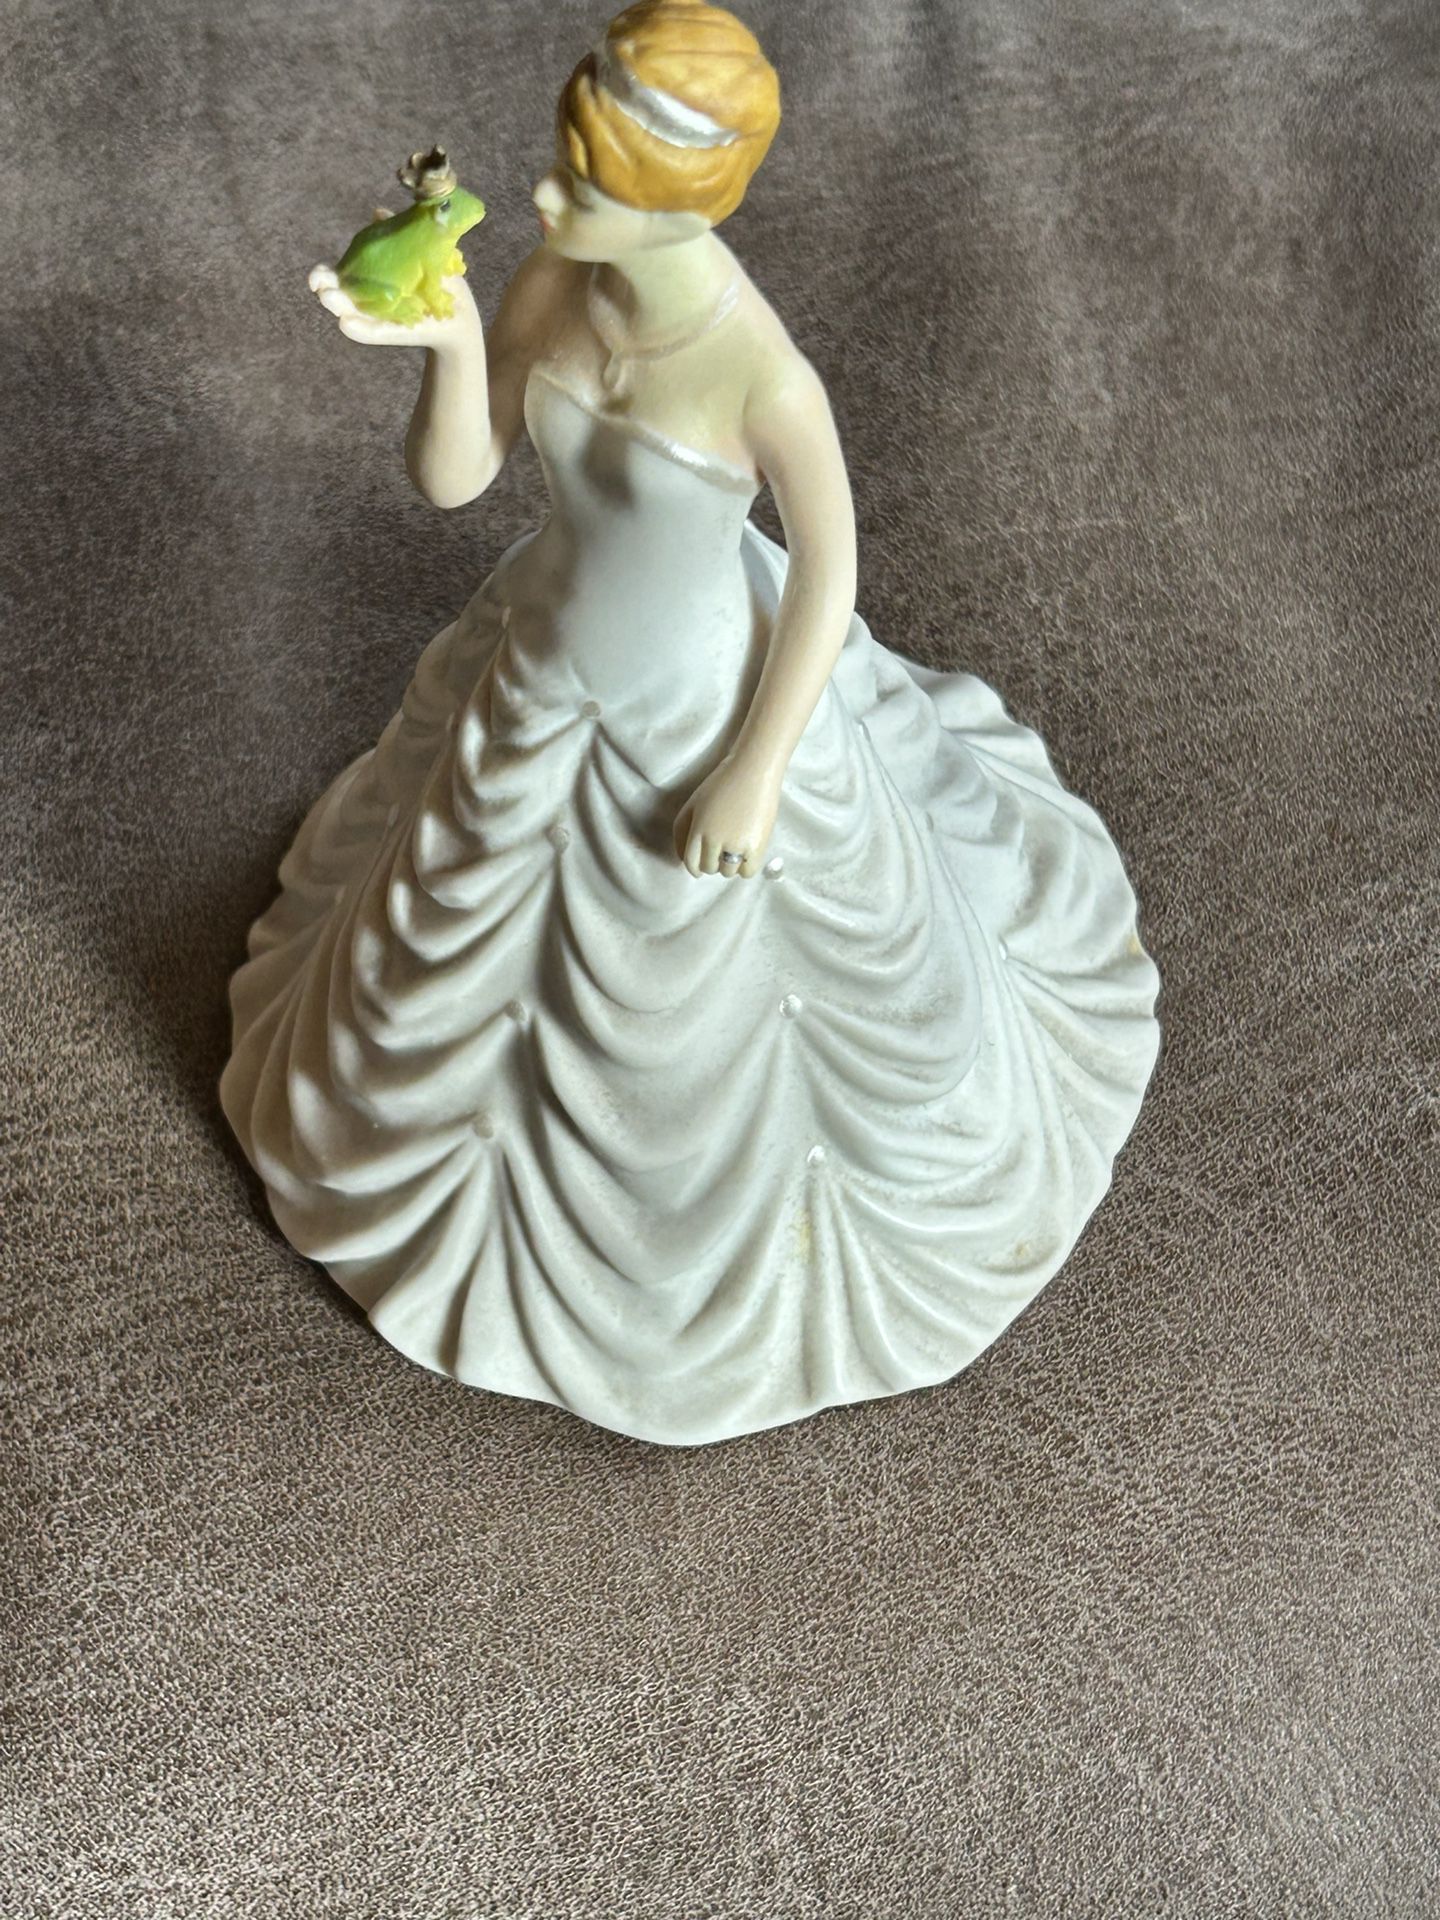 WEDDINGSTAR Princess Bride Kissing Frog Prince Wedding Porcelain Figurine Cake Topper